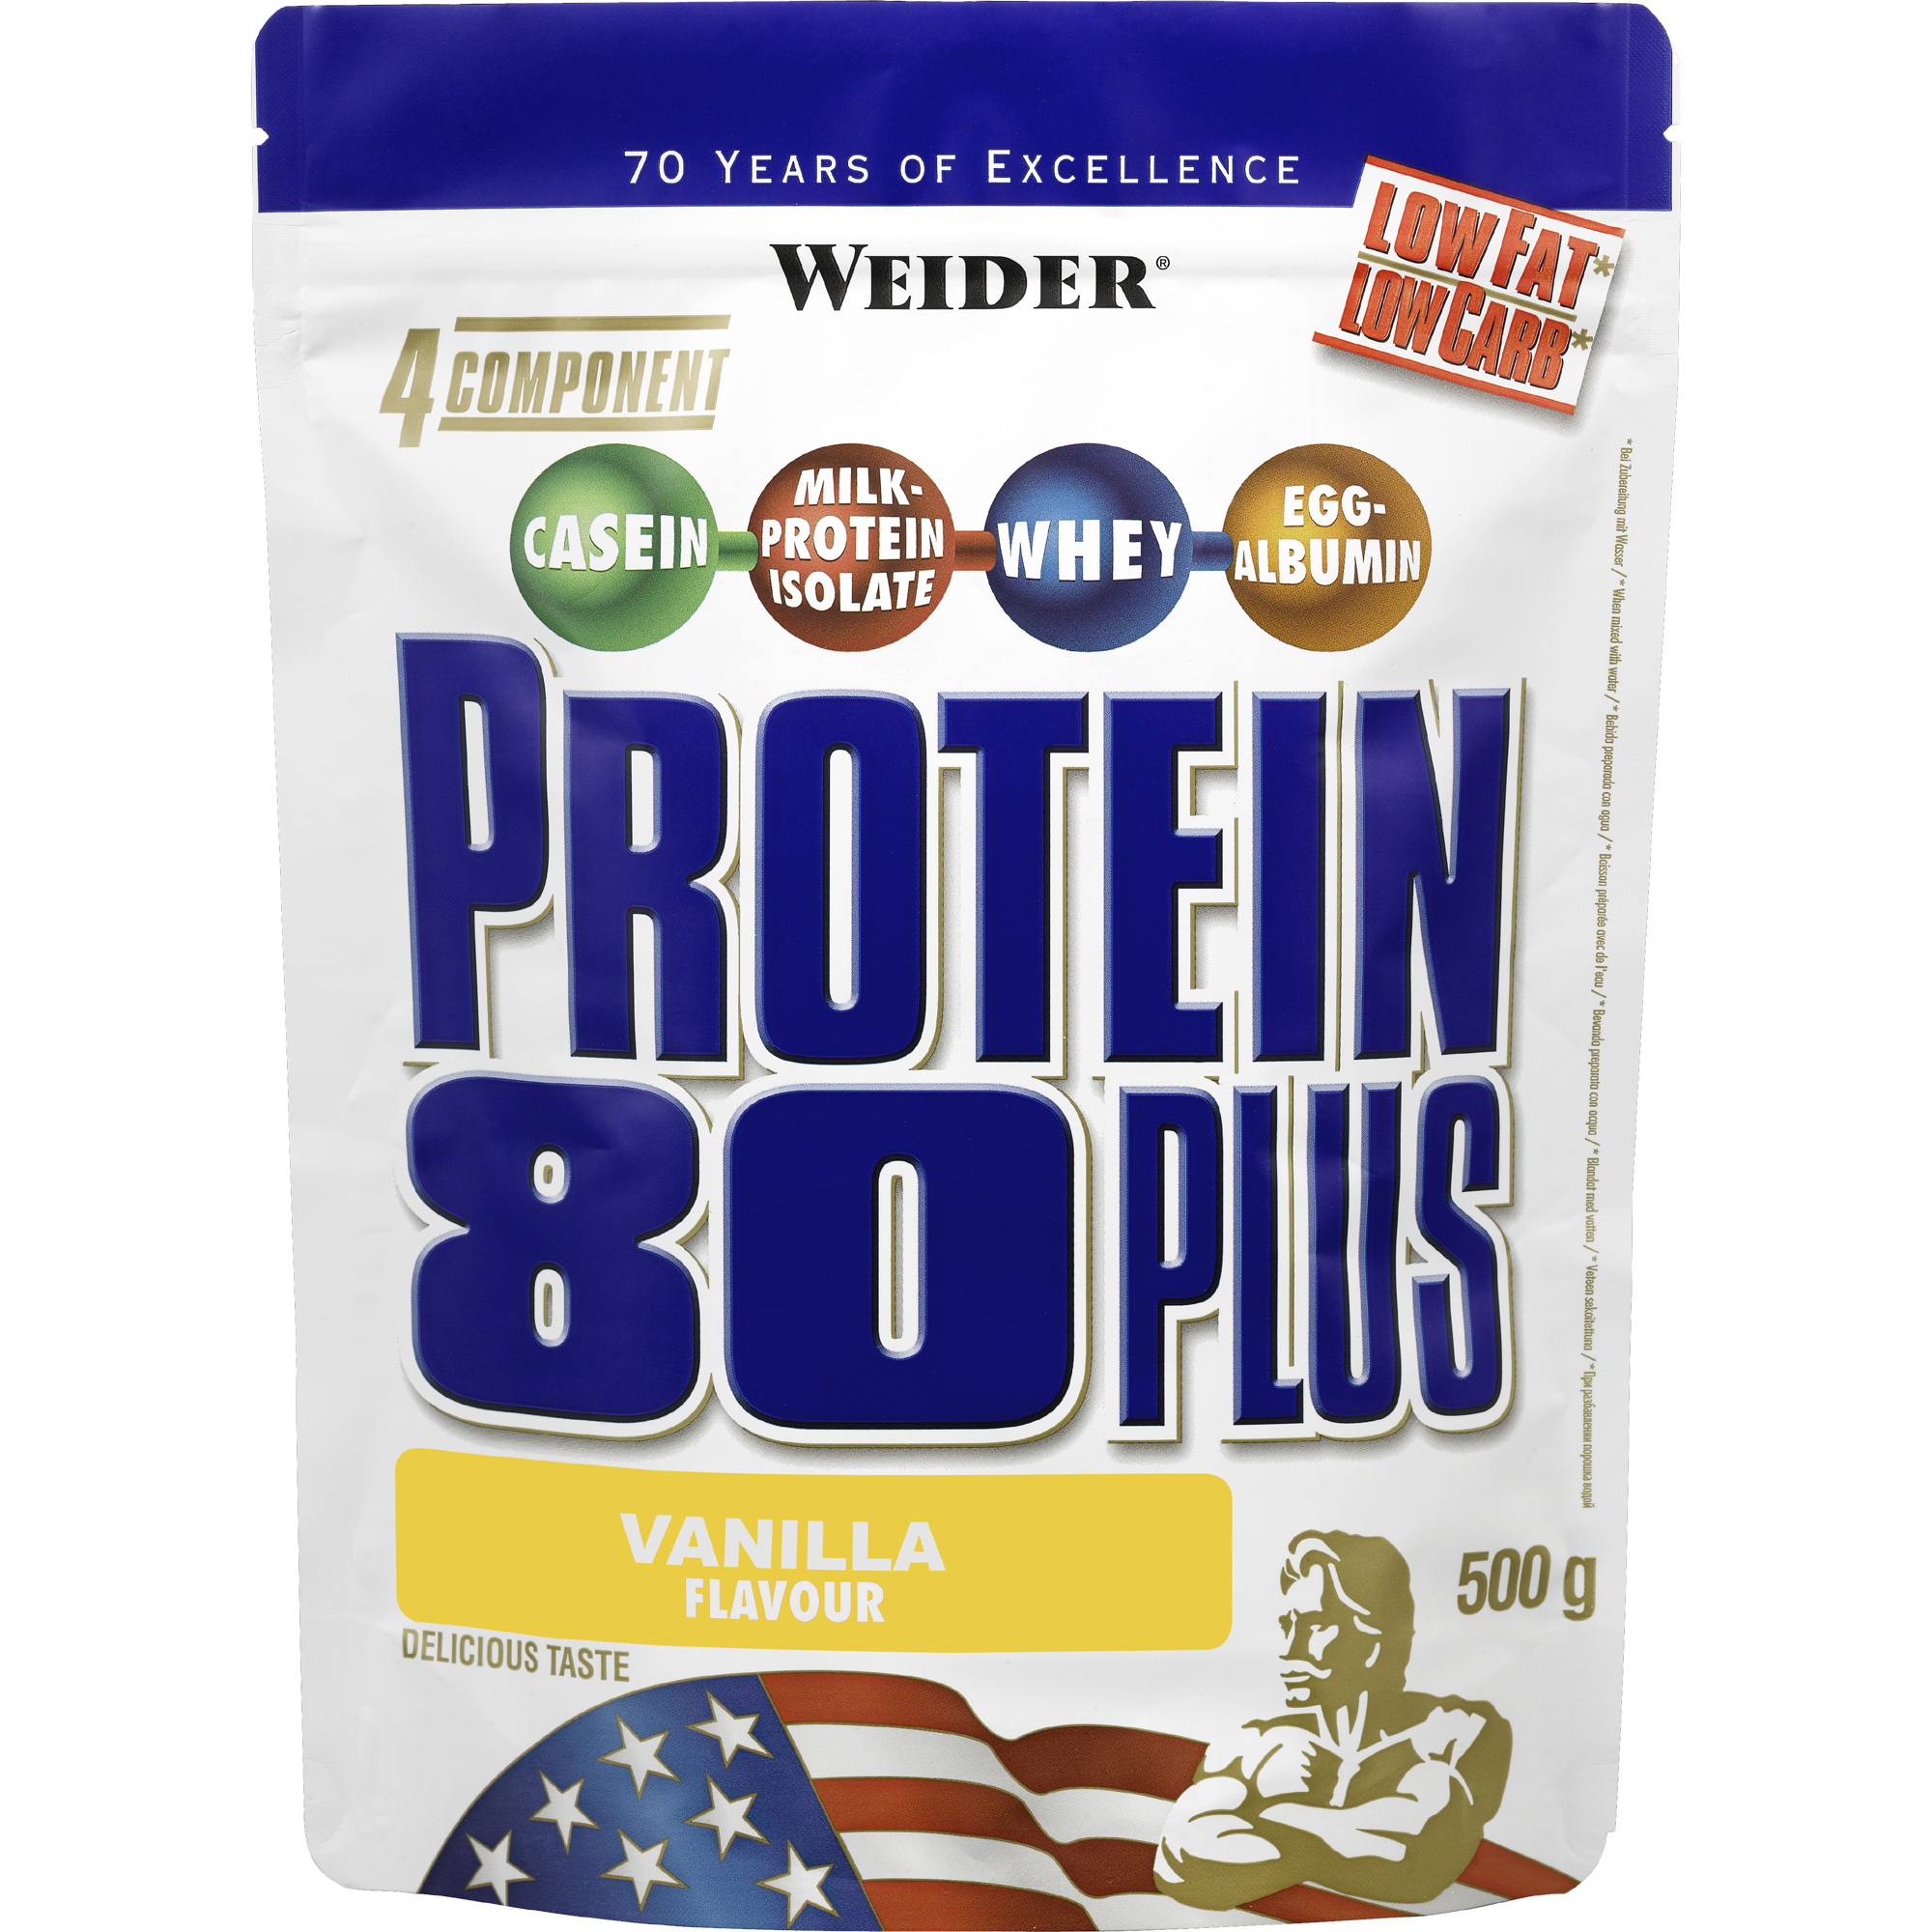 Protein 80 Plus (Weider)